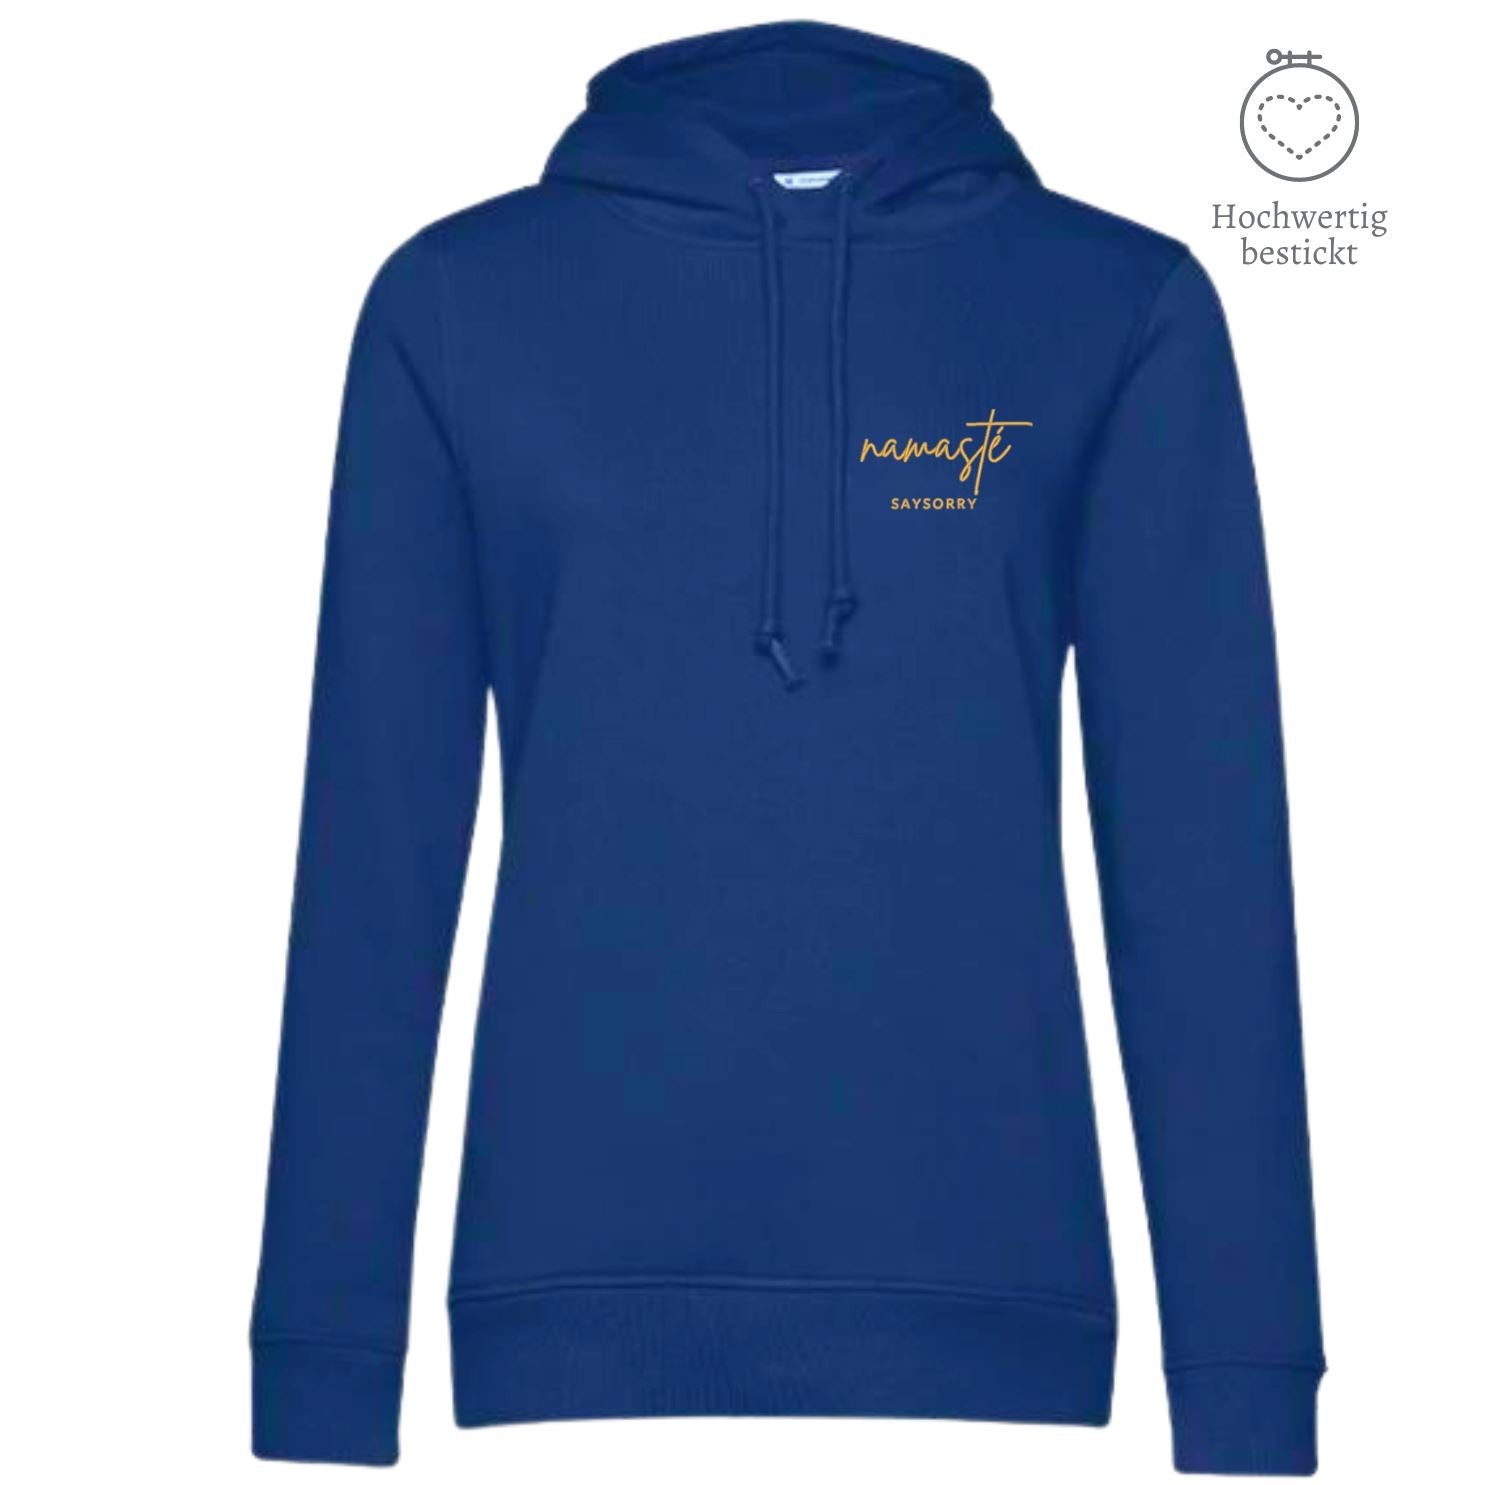 Organic & recycelter Damen Hoodie »Namasté in Gold« hochwertig bestickt Shirt SAYSORRY Royal Blue XS 